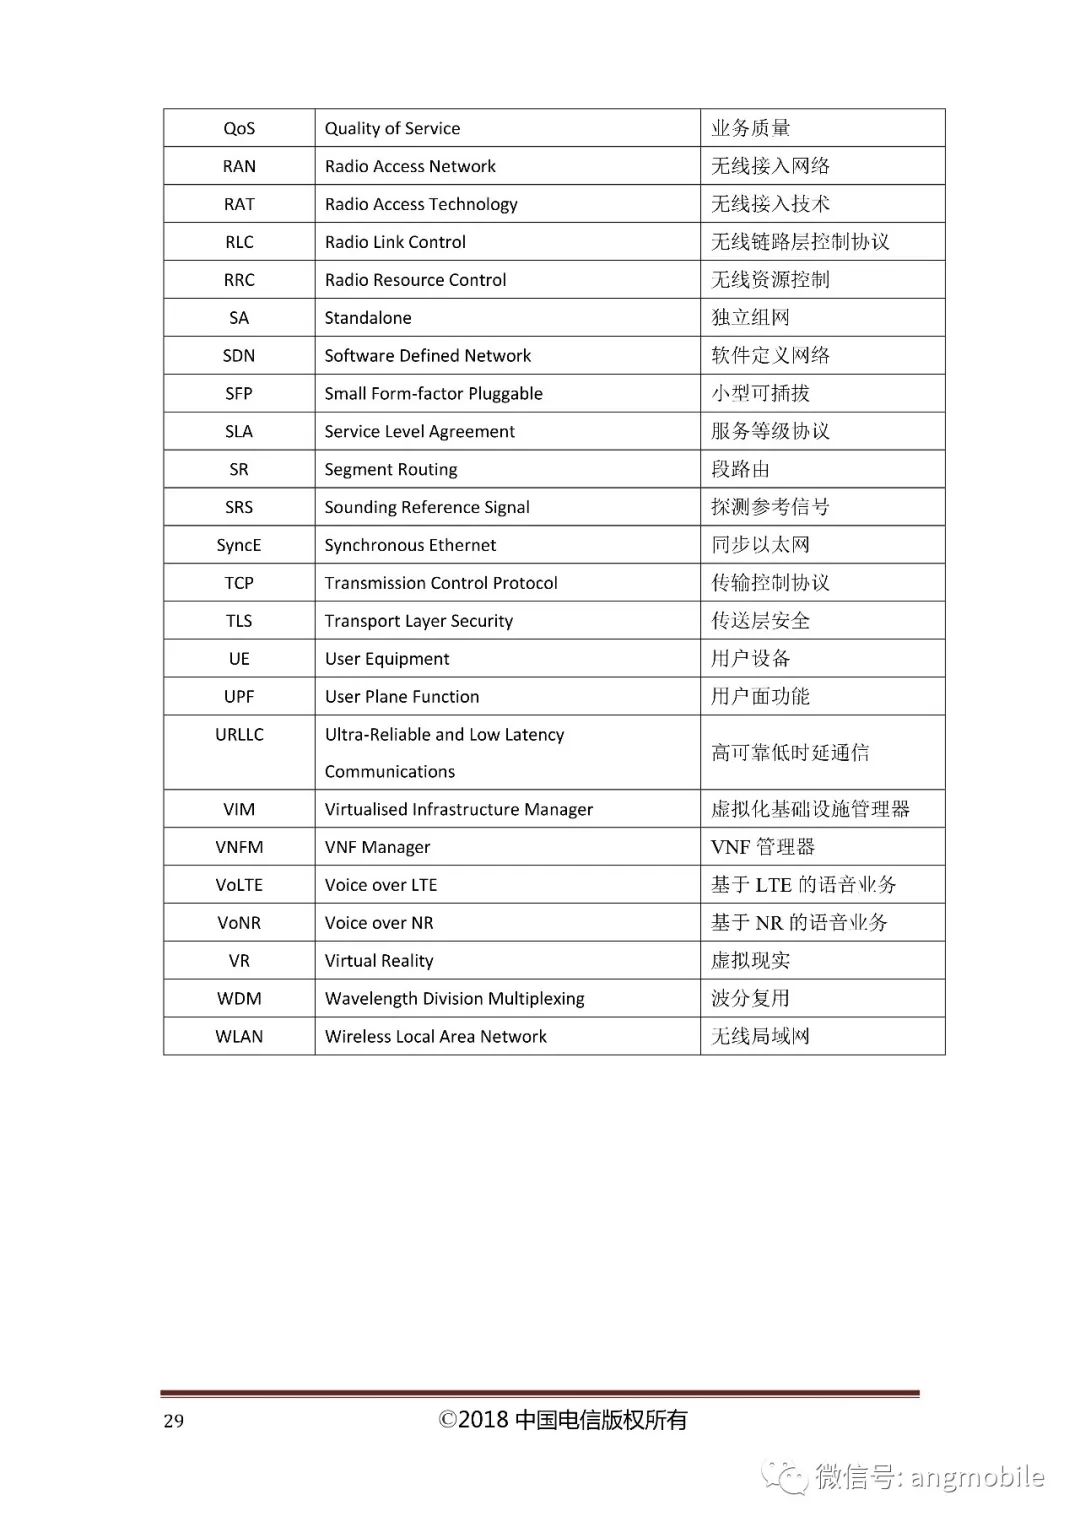 中国电信5G目标网络架构和《中国电信5G技术白皮书》白皮书全文